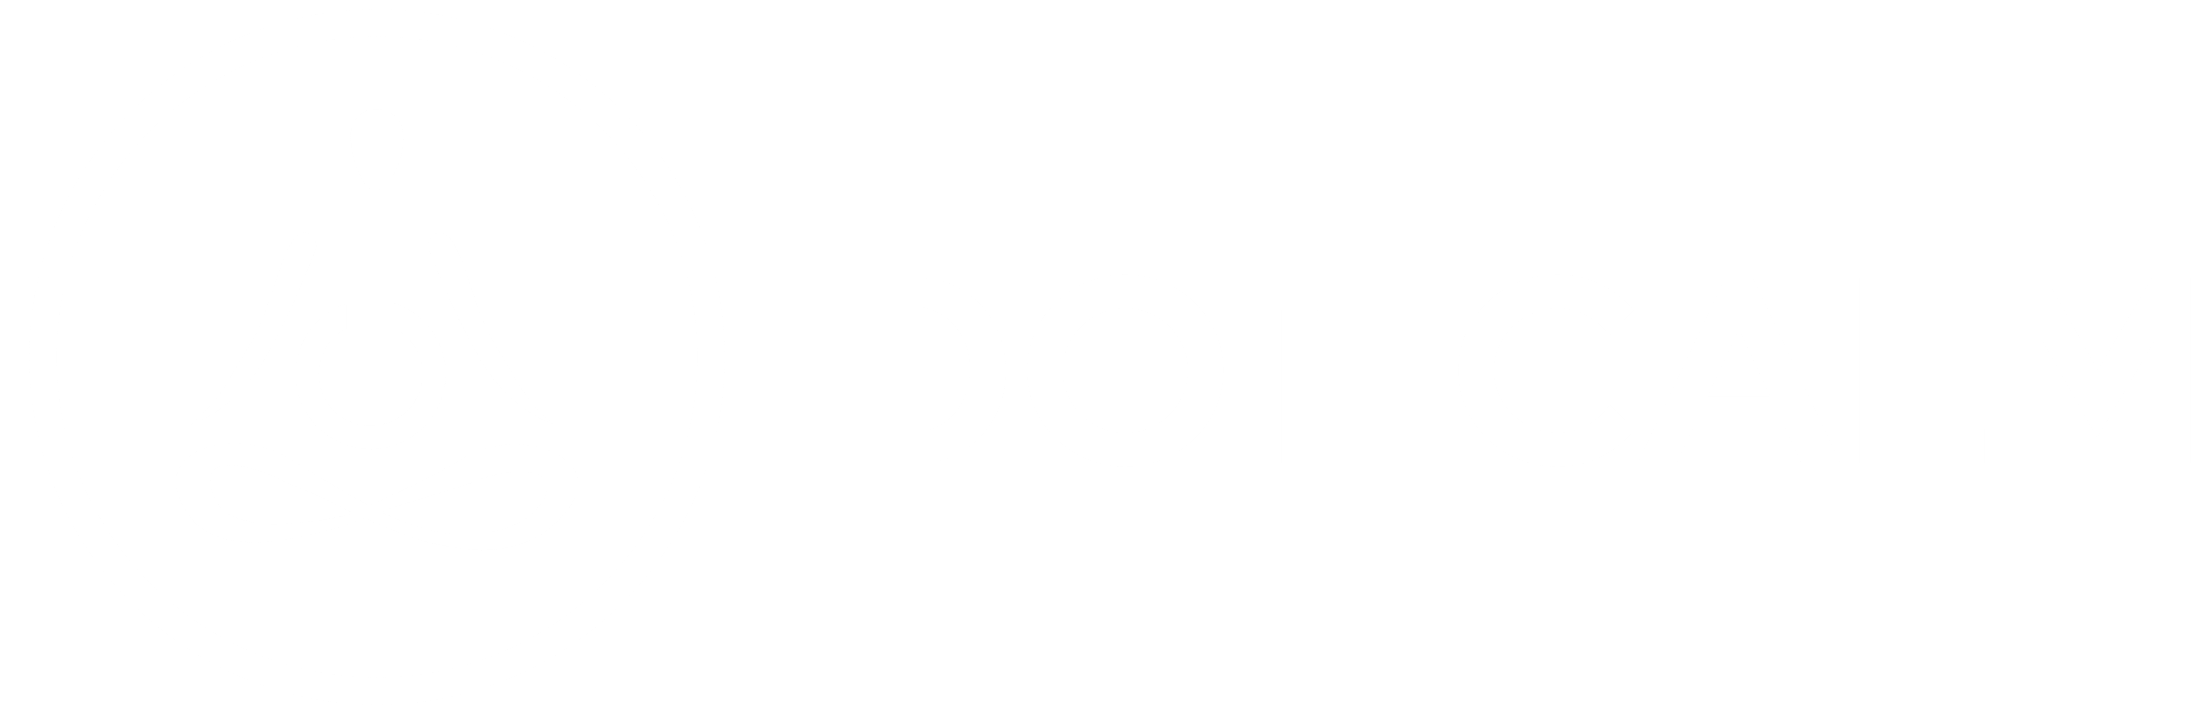 Dot Calm Logo